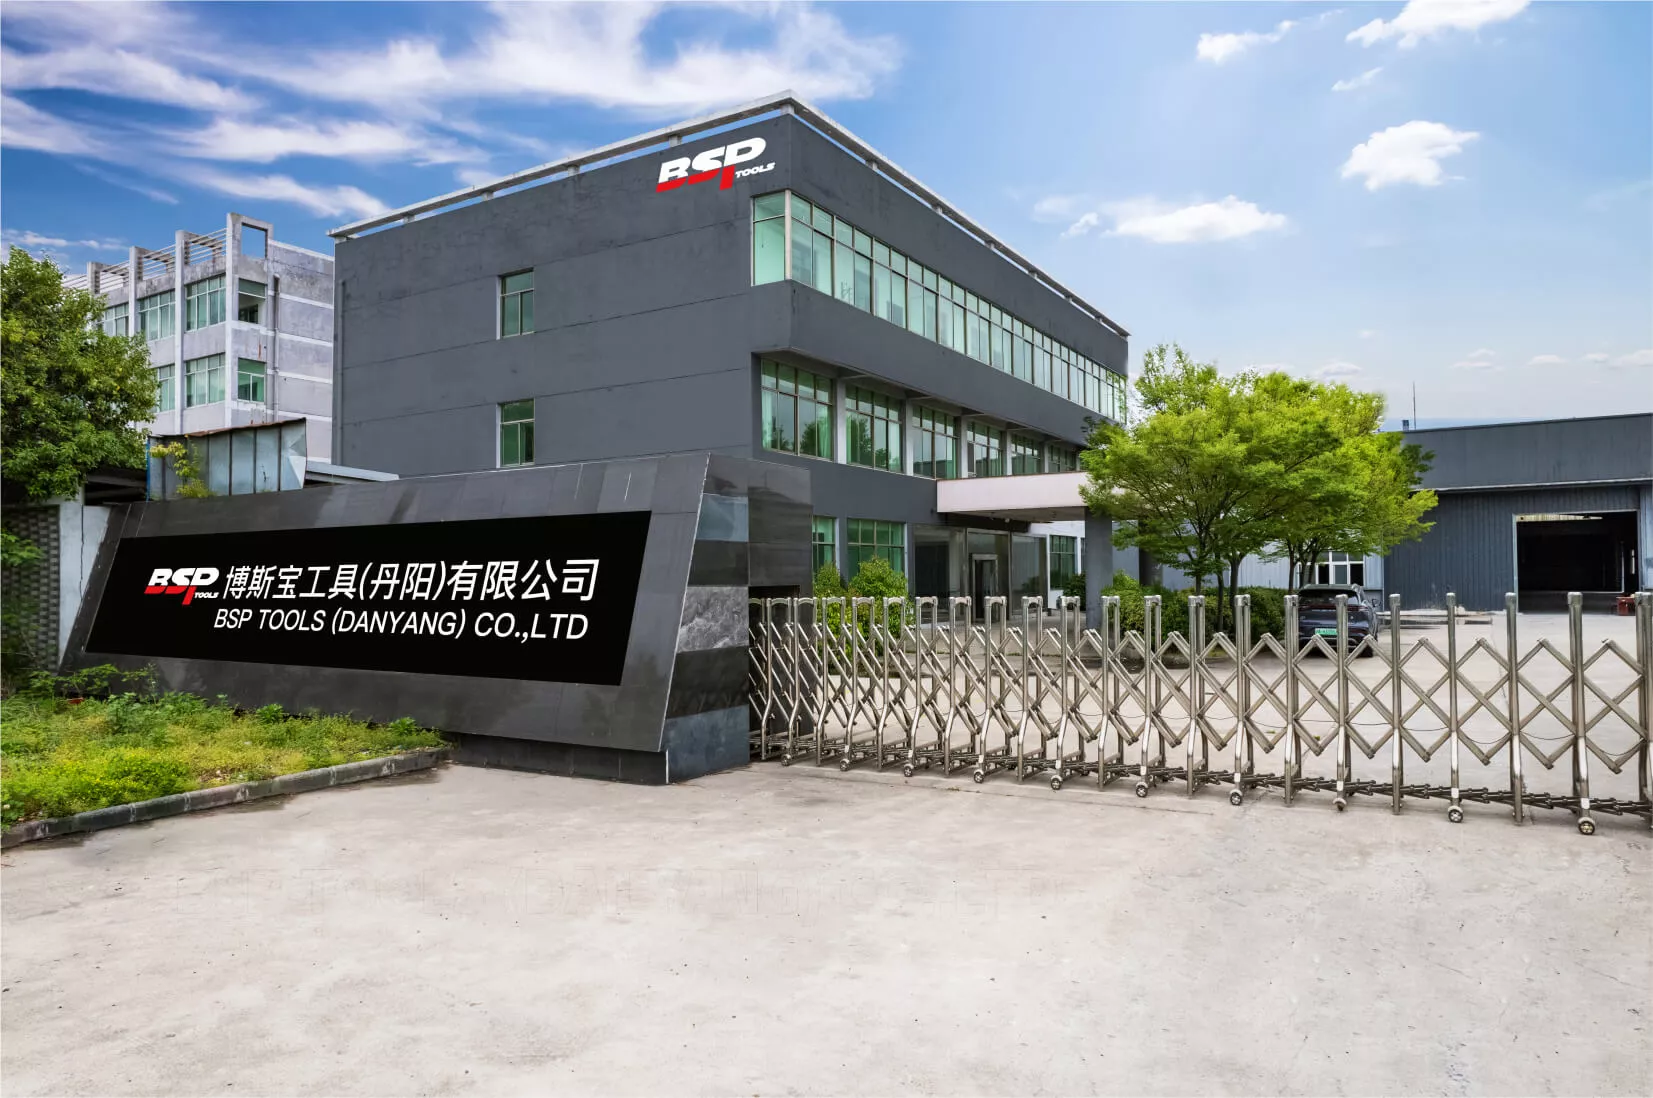 博斯宝工具（丹阳）有限公司简介：系位于江苏丹阳的生产基地，致力于 